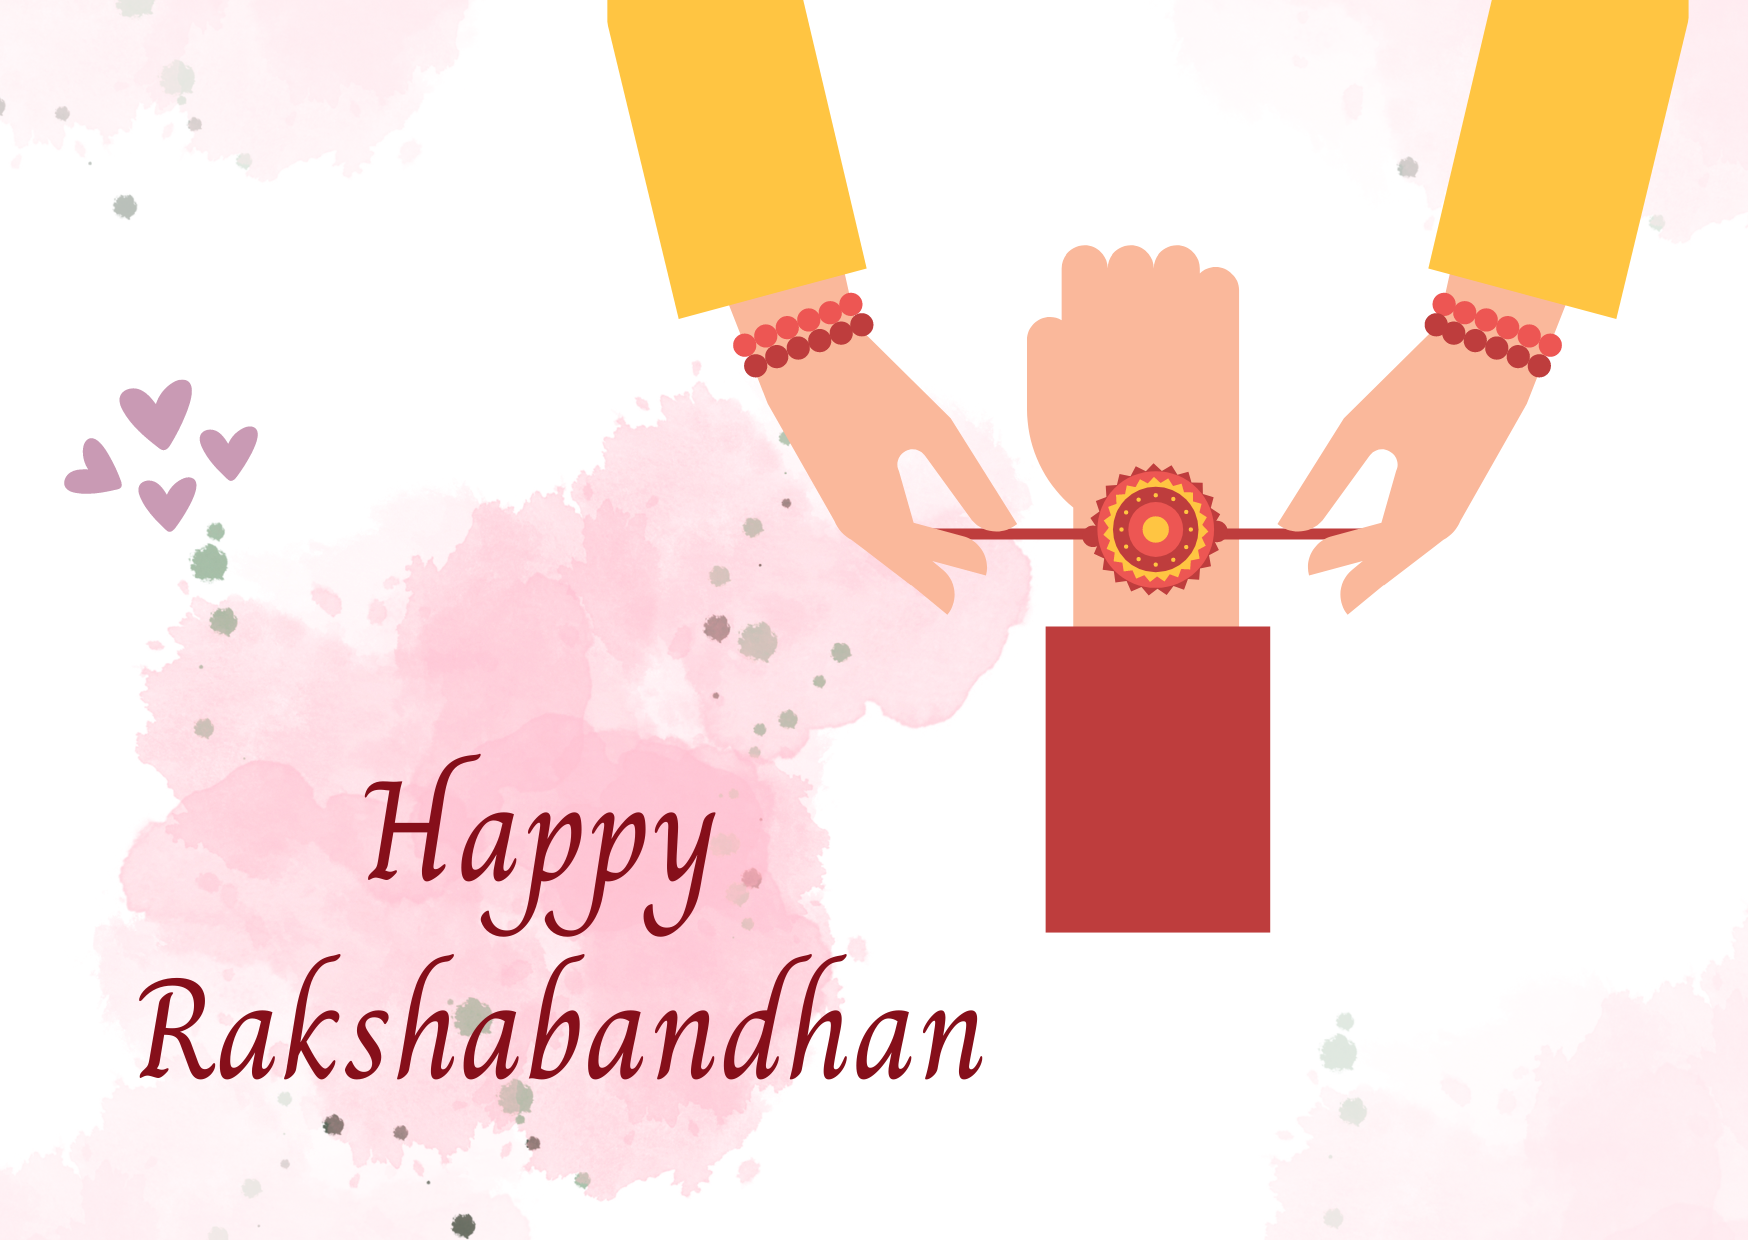 Happy Rakshabandhan - 1